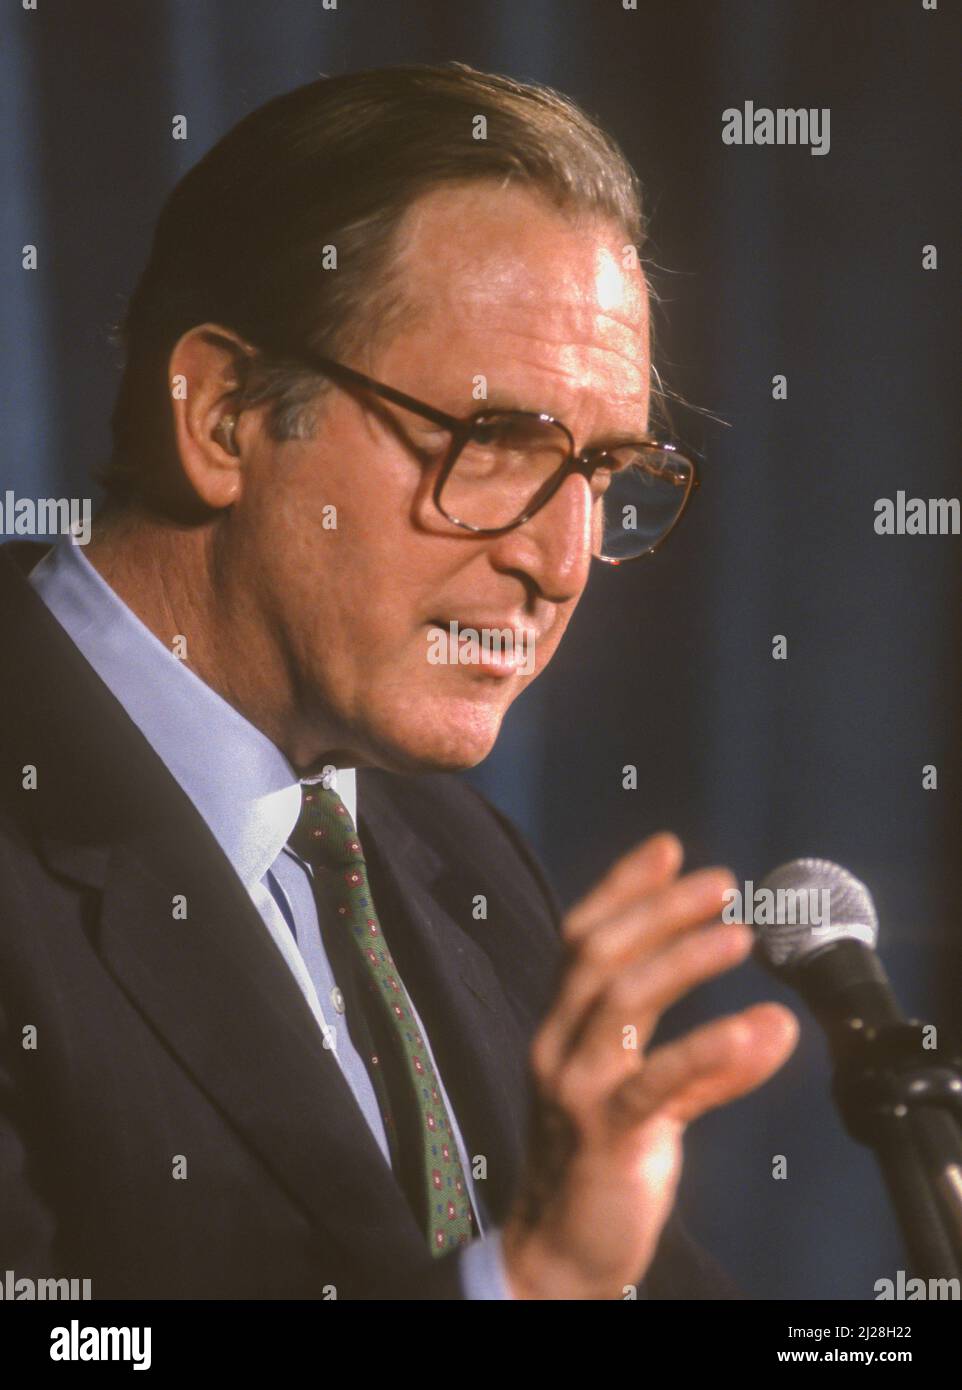 WASHINGTON, DC, EE.UU. - El Senador Jay Rockefeller (D-WV) de EE.UU. Habló durante la reunión de la Asociación Médica Americana, marzo de 1993. Foto de stock